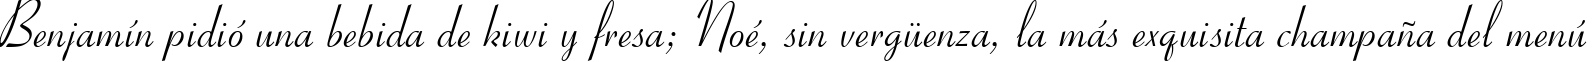 Пример написания шрифтом Ribbon 131 BT текста на испанском